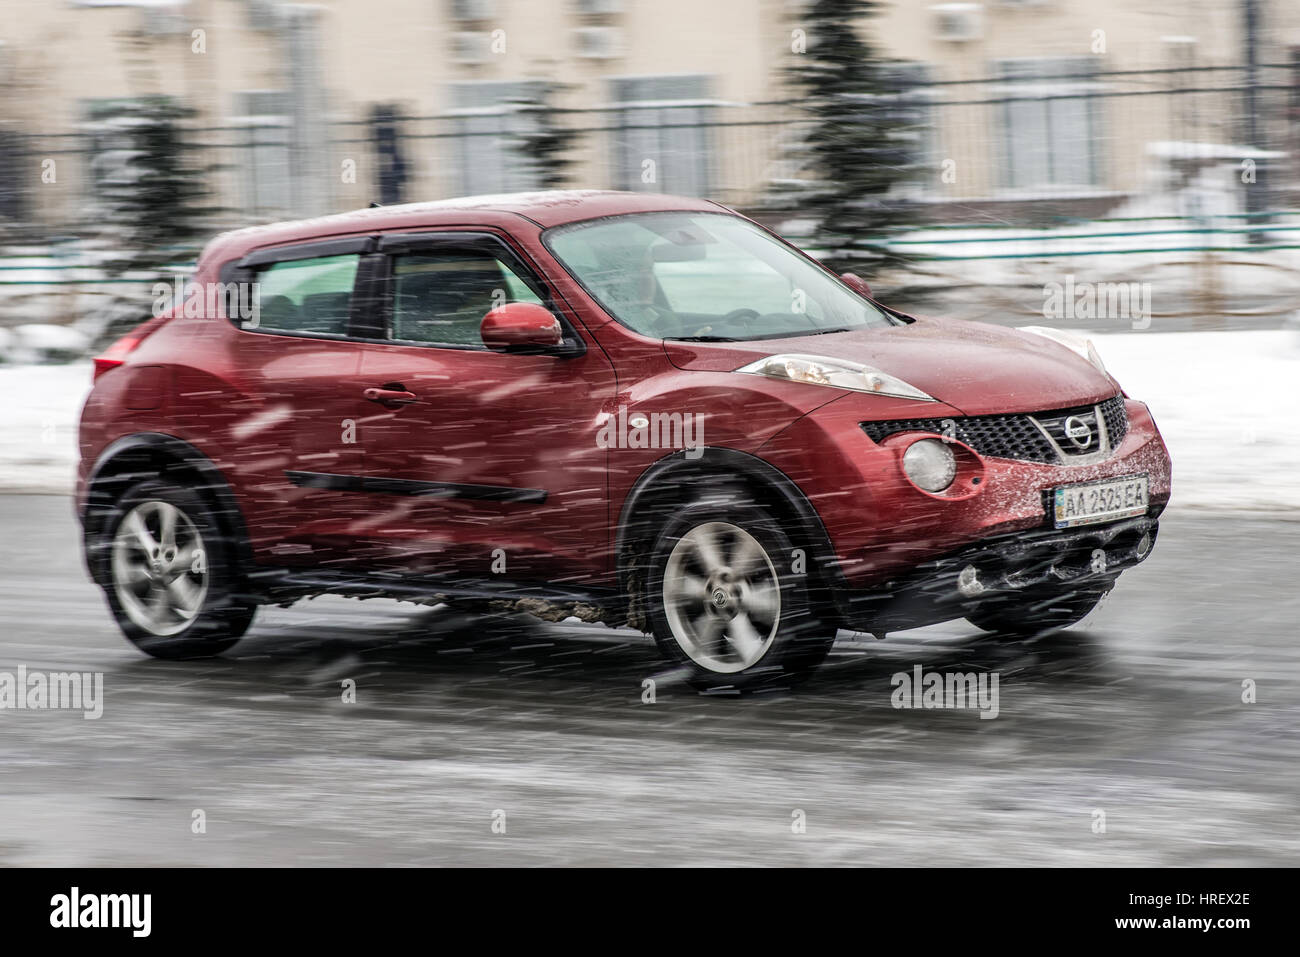 Kiev, Ukraine - Décembre 4th, 2016 : Rouge Nissan Juke voiture en mouvement avec l'arrière-plan flou Banque D'Images